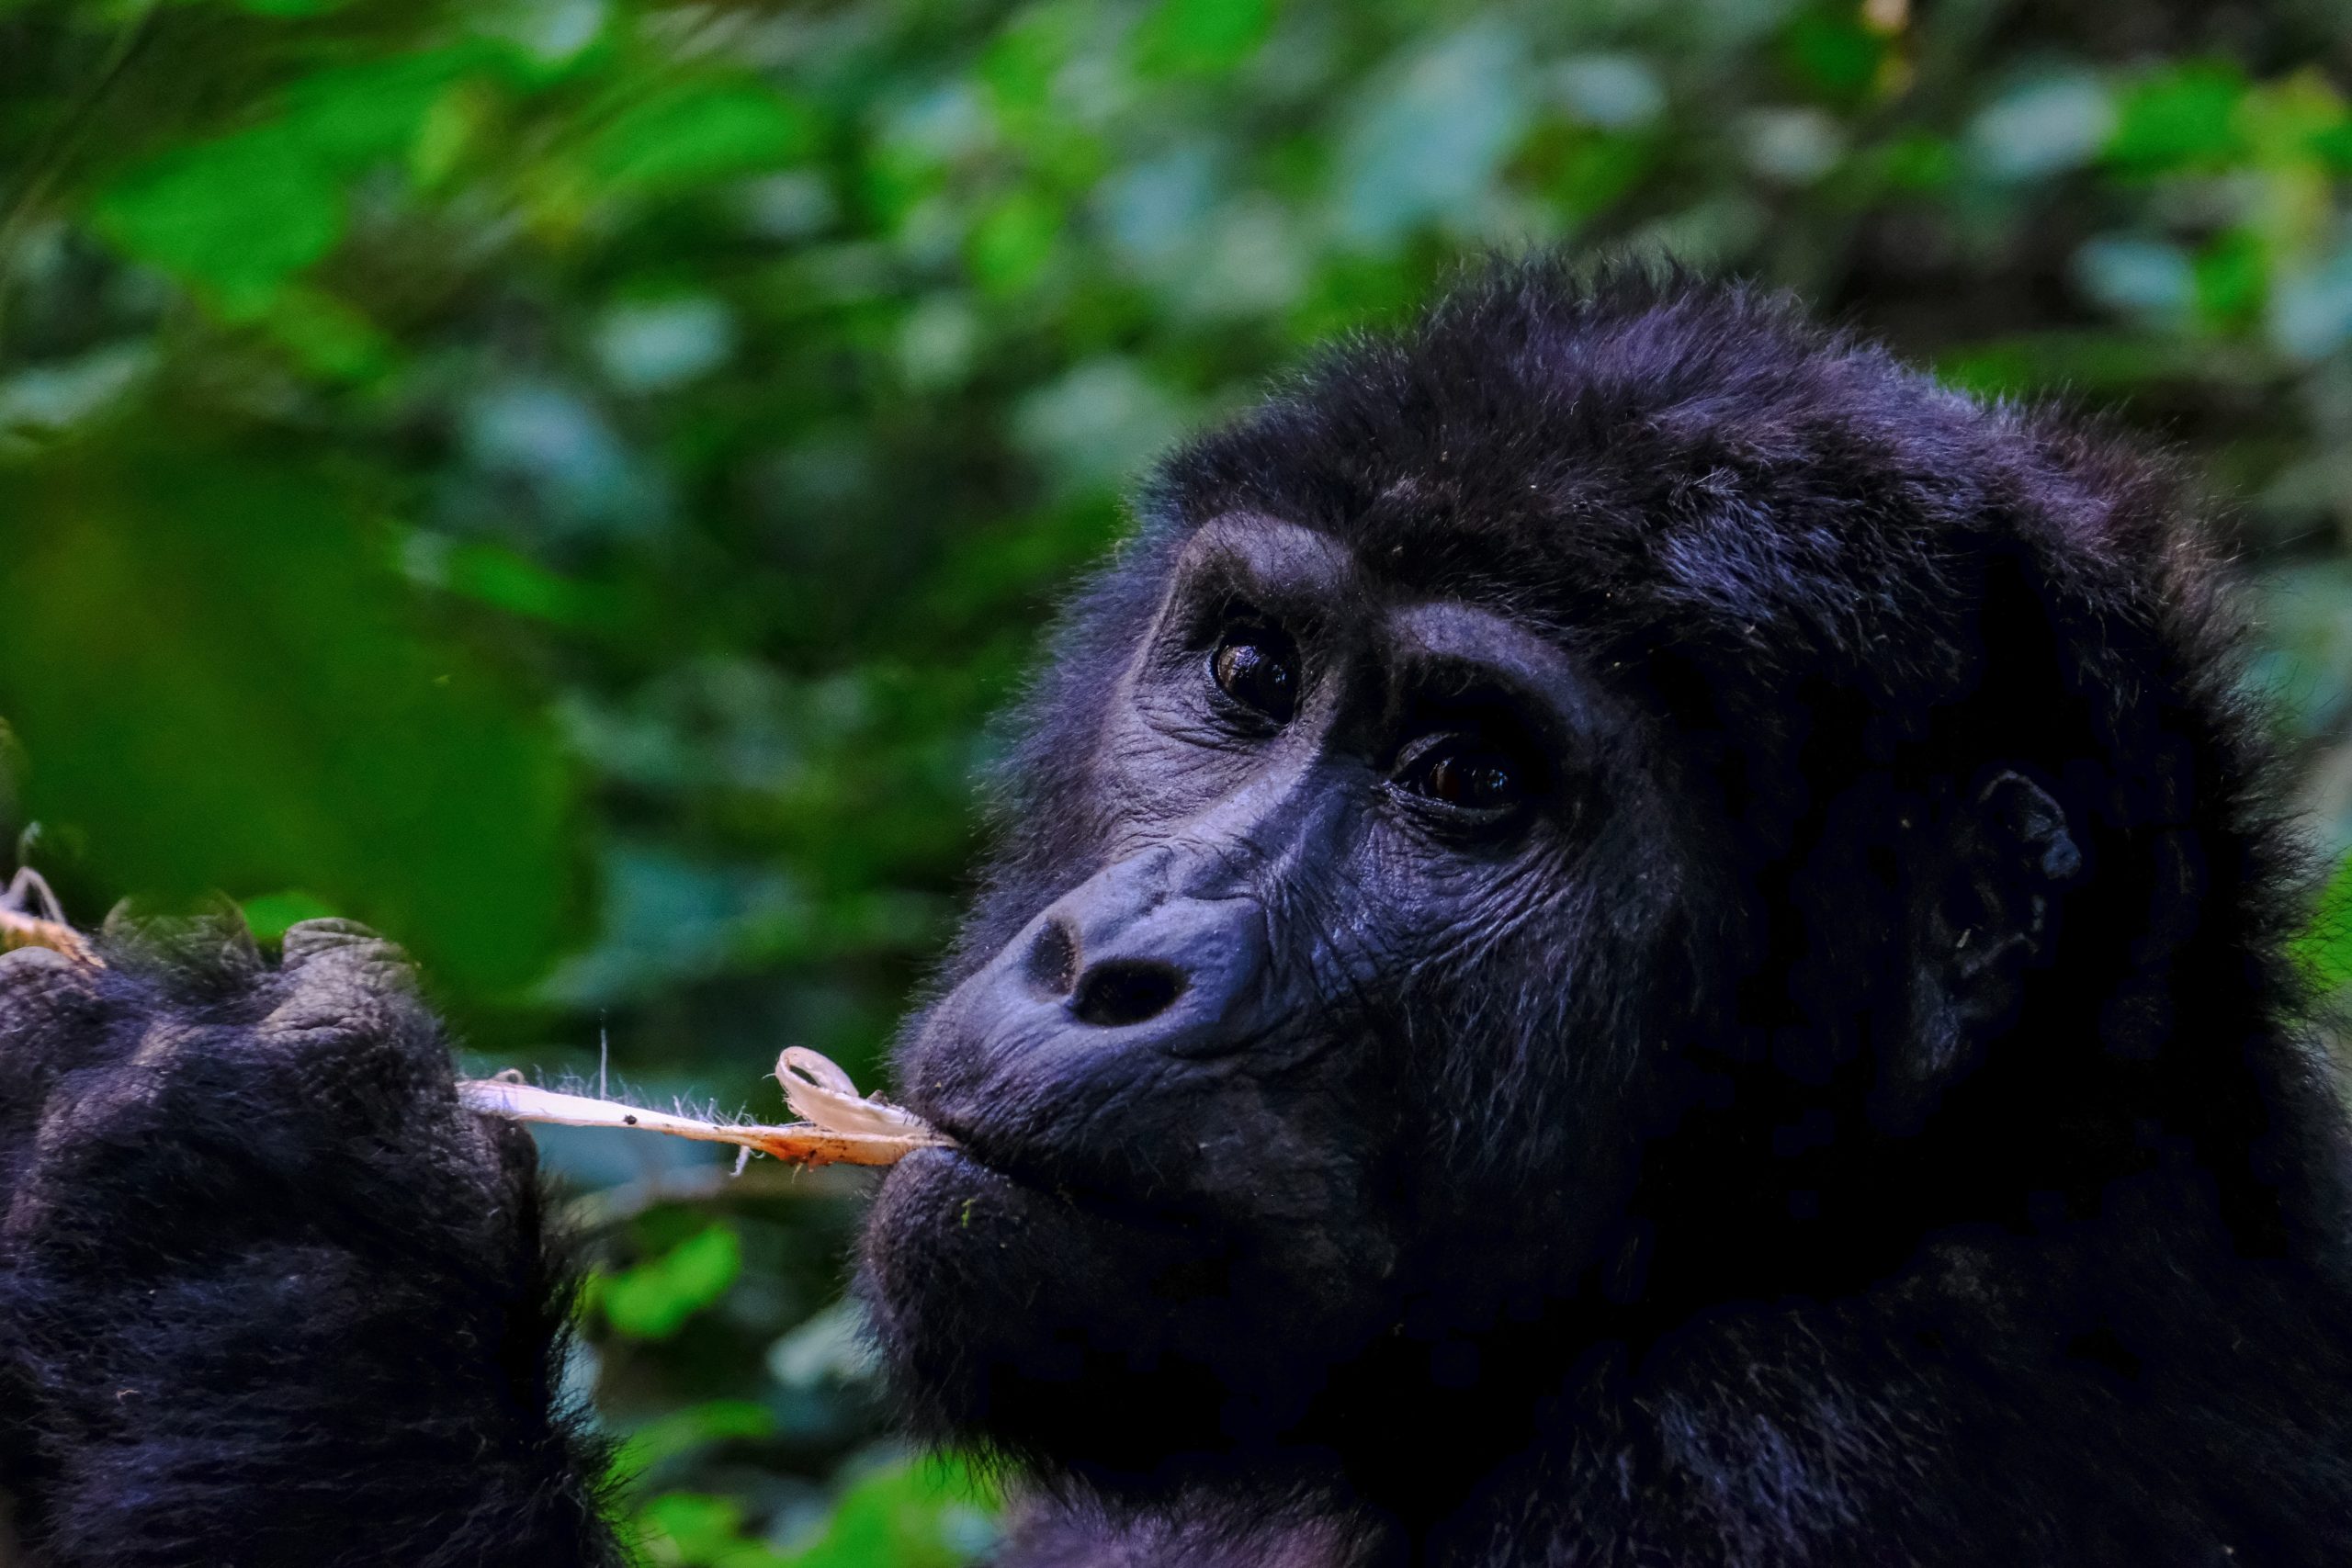 Why Are Gorilla Permit Expensive